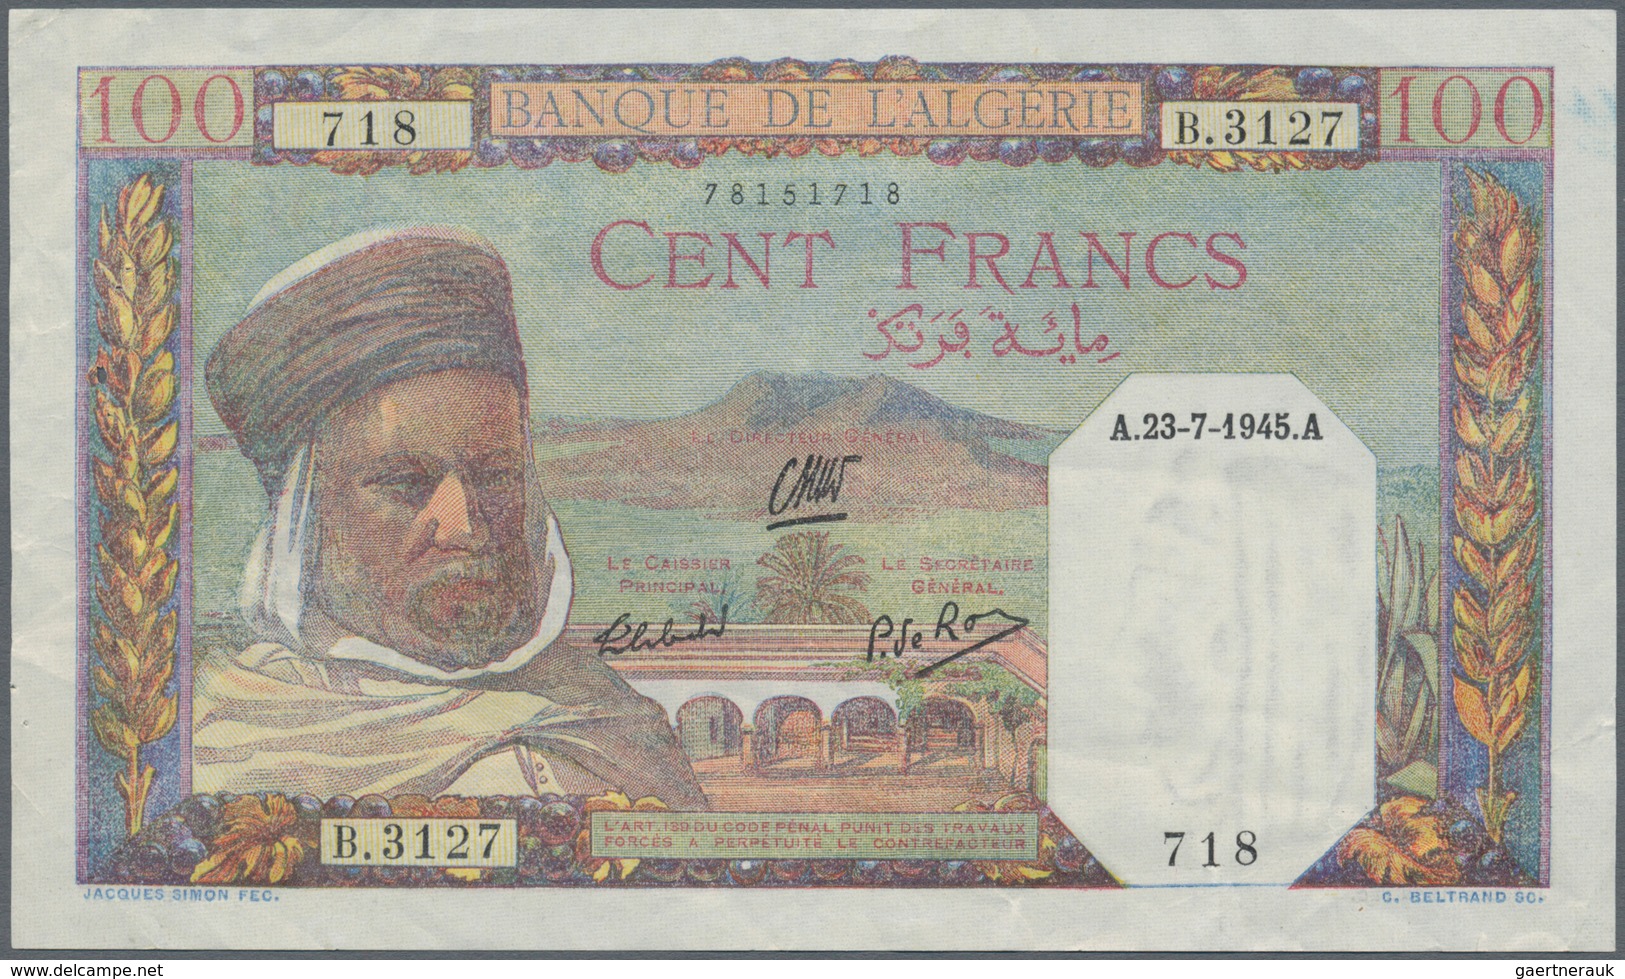 Algeria / Algerien: Set Of 3 Banknotes Containing 5 Francs 1916 P. 71b (VG), 100 Francs 1936 P. 81b - Algérie